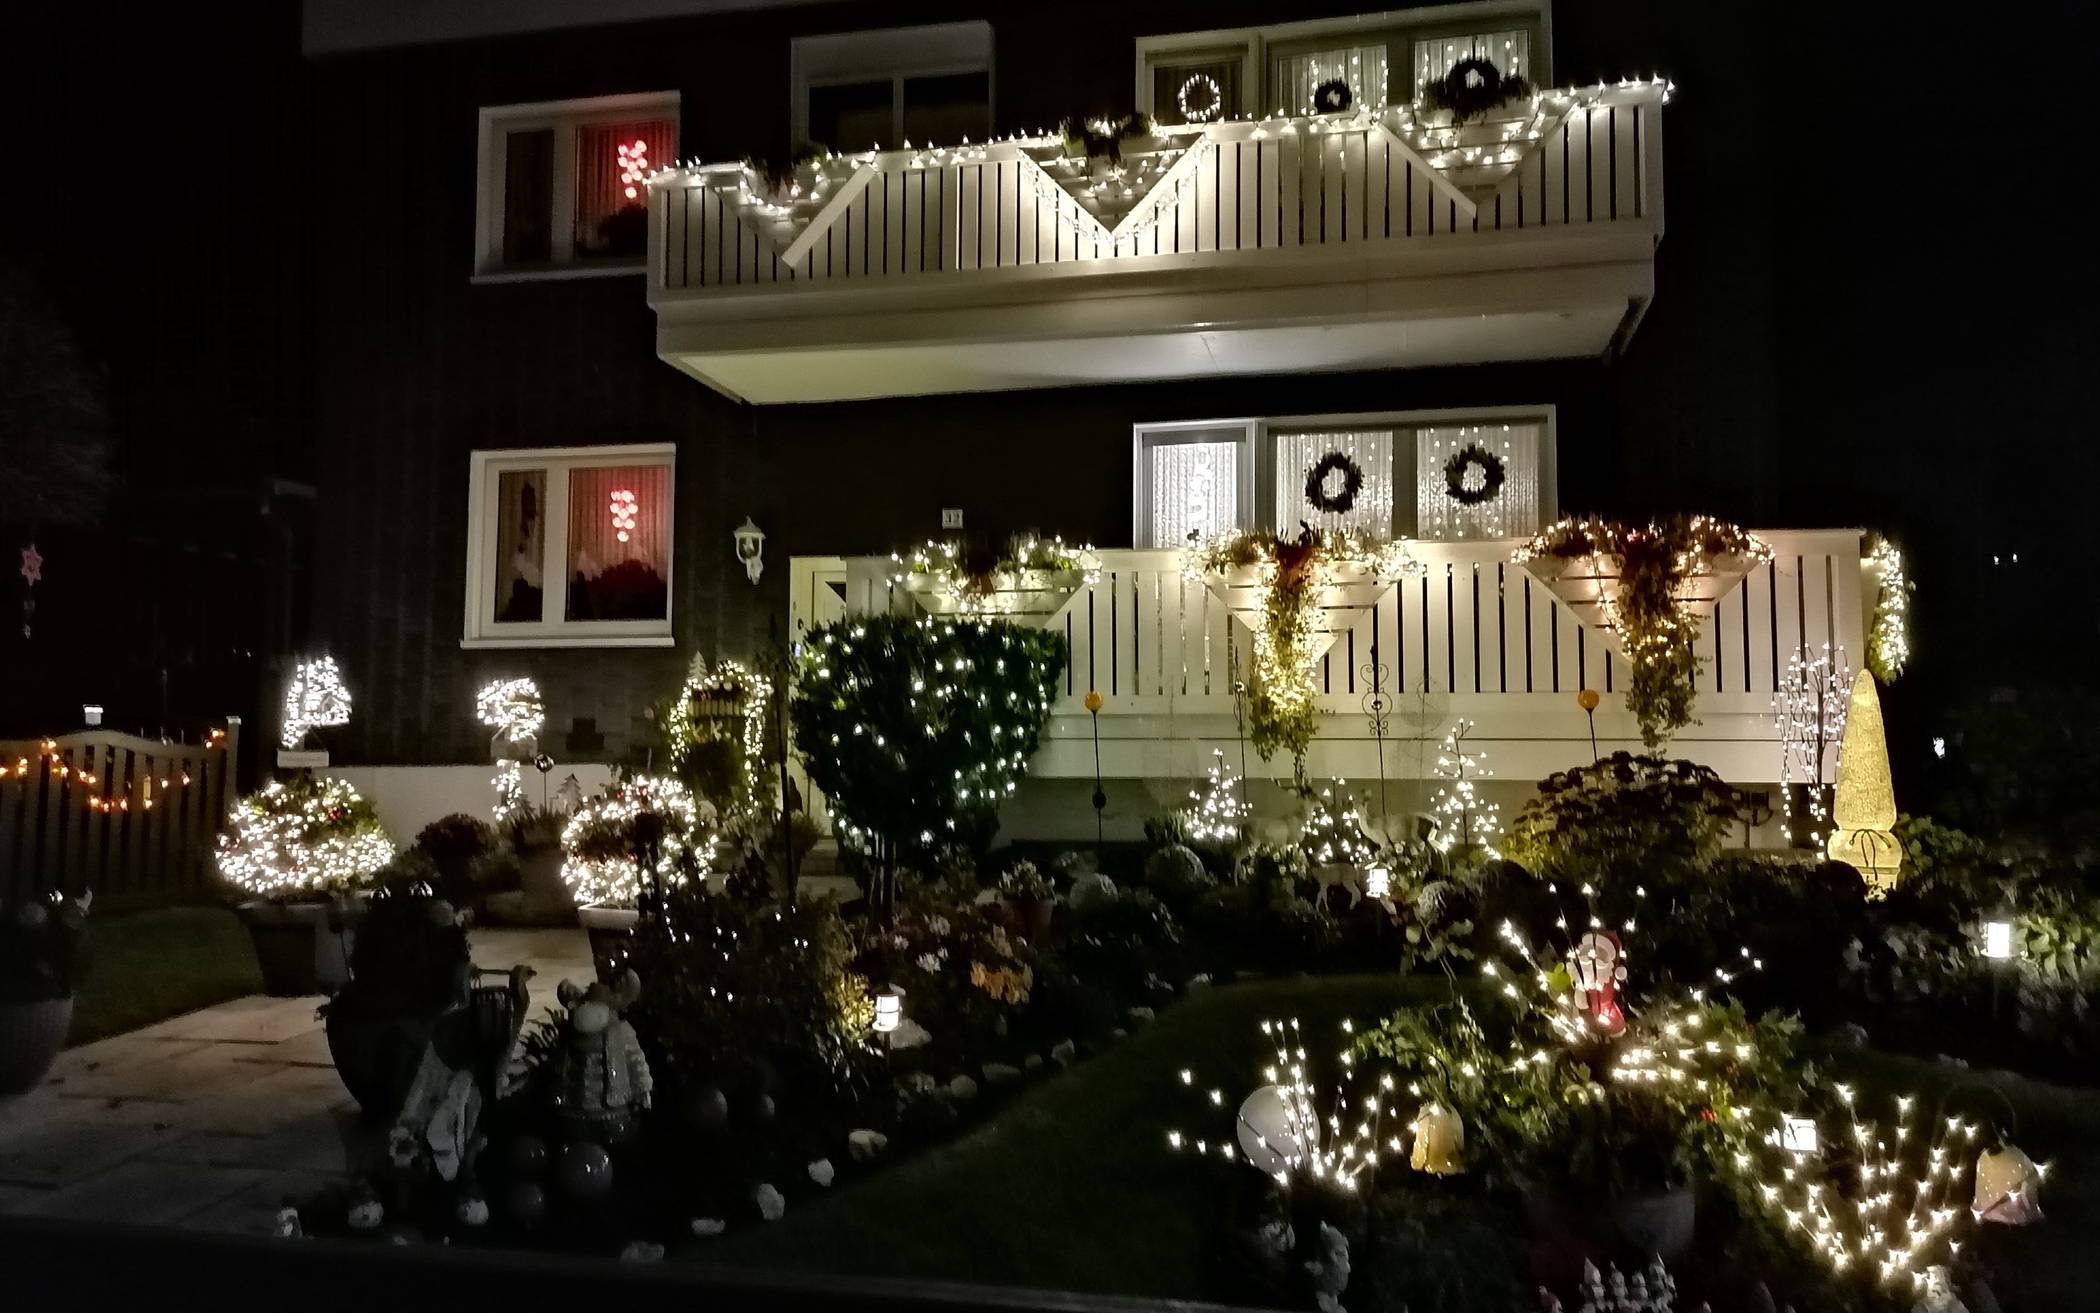  In der Korzerter Straße ist wieder ein Weihnachtshaus im Lichterglanz zu sehen. „Es wird von Nachbarn und Passanten gerne bewundert und bildlich festgehalten“, freut sich Charlotte Swienty. Sie möchte „diese etwas andere Zeit etwas erhellen und Freude bringen“. 